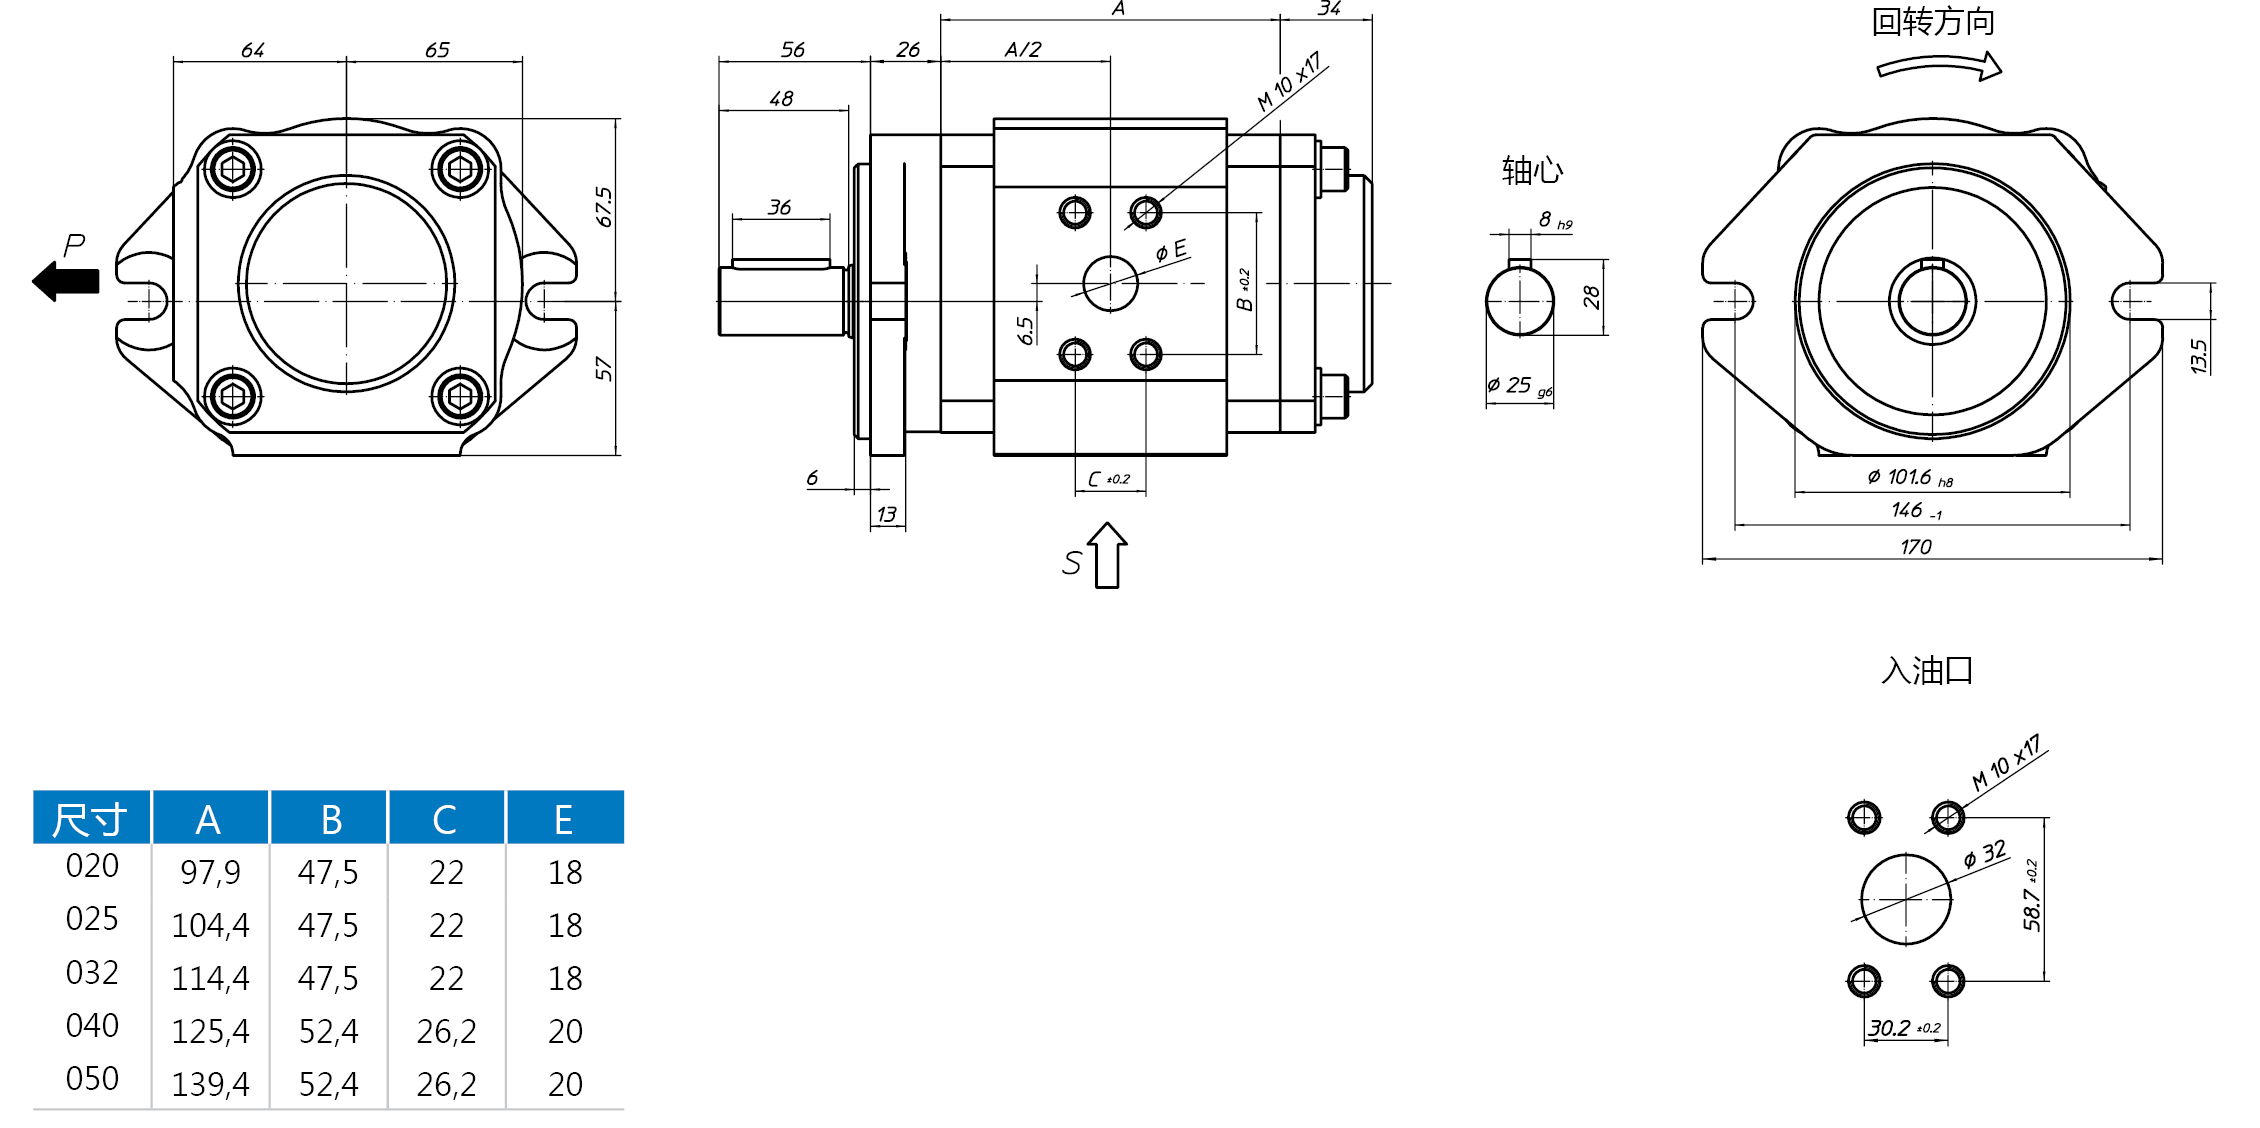 Eckerle内啮合齿轮泵EIPC3-RK23尺寸图